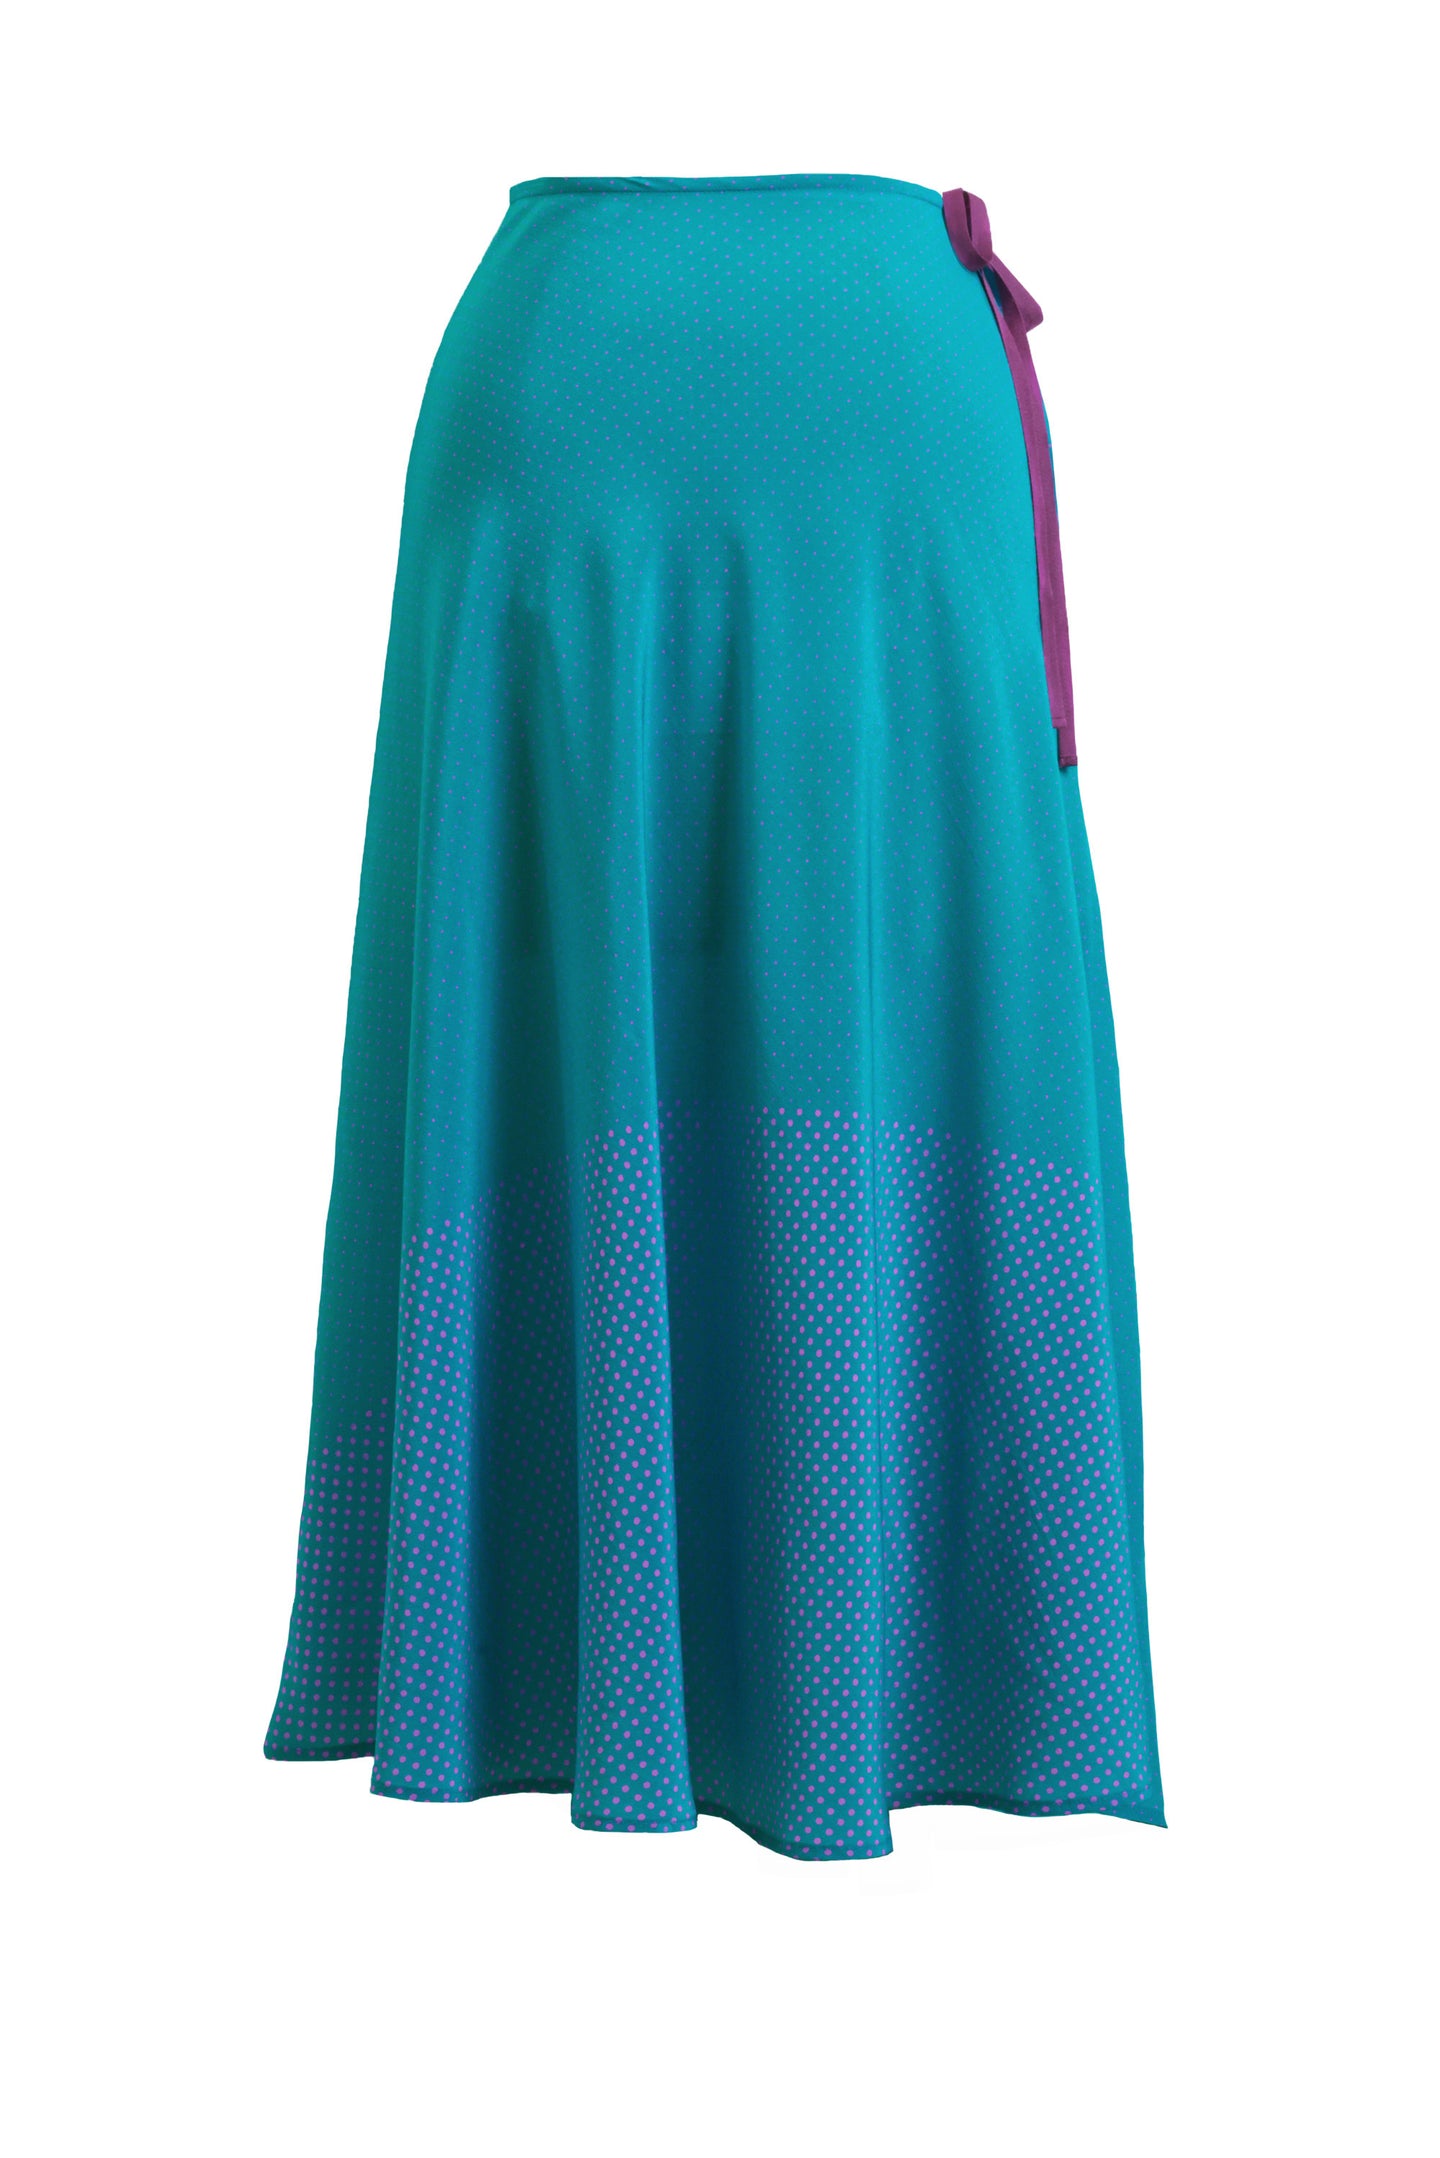 Silk Dot Skirt | Peacock Green